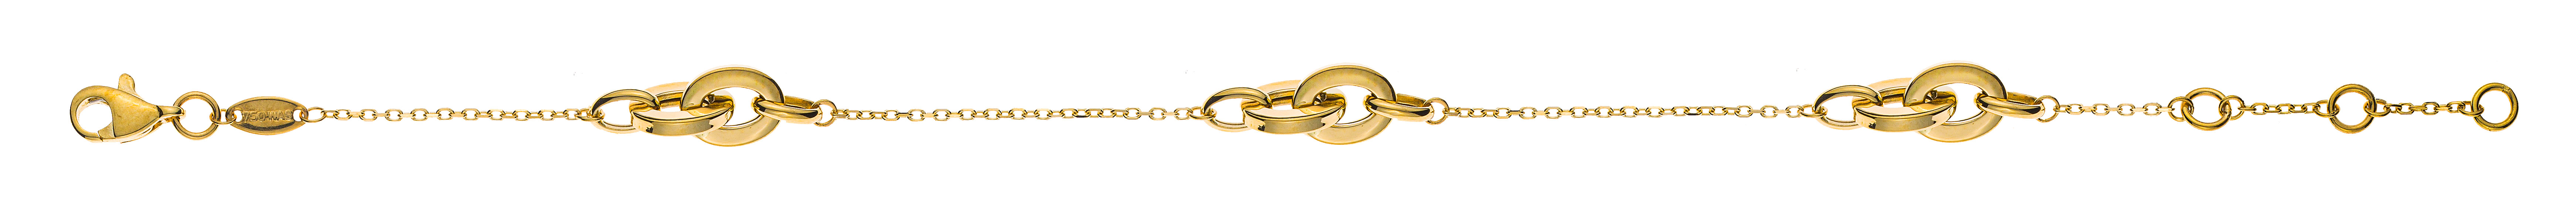 AURONOS Prestige Bracelet ancre or jaune 18 carats 19cm